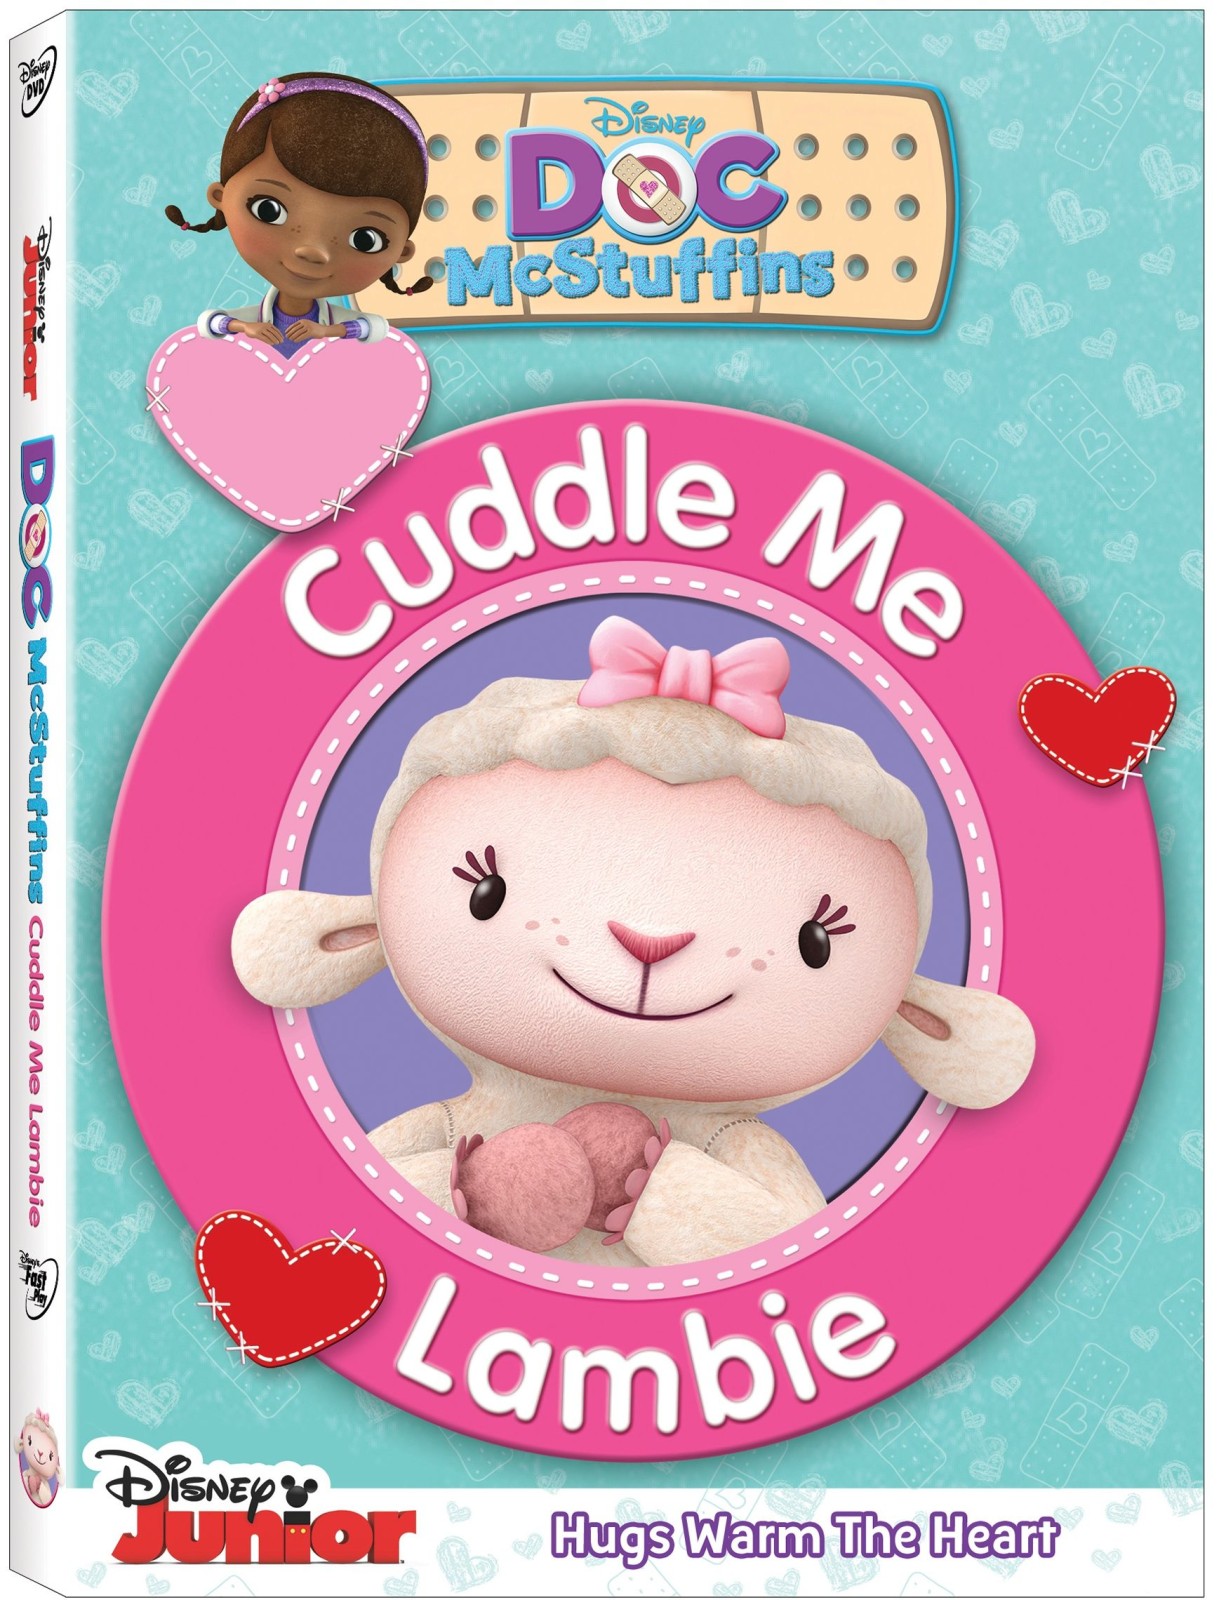 Doc McStuffins Cuddle Me Lambie Disney DVD